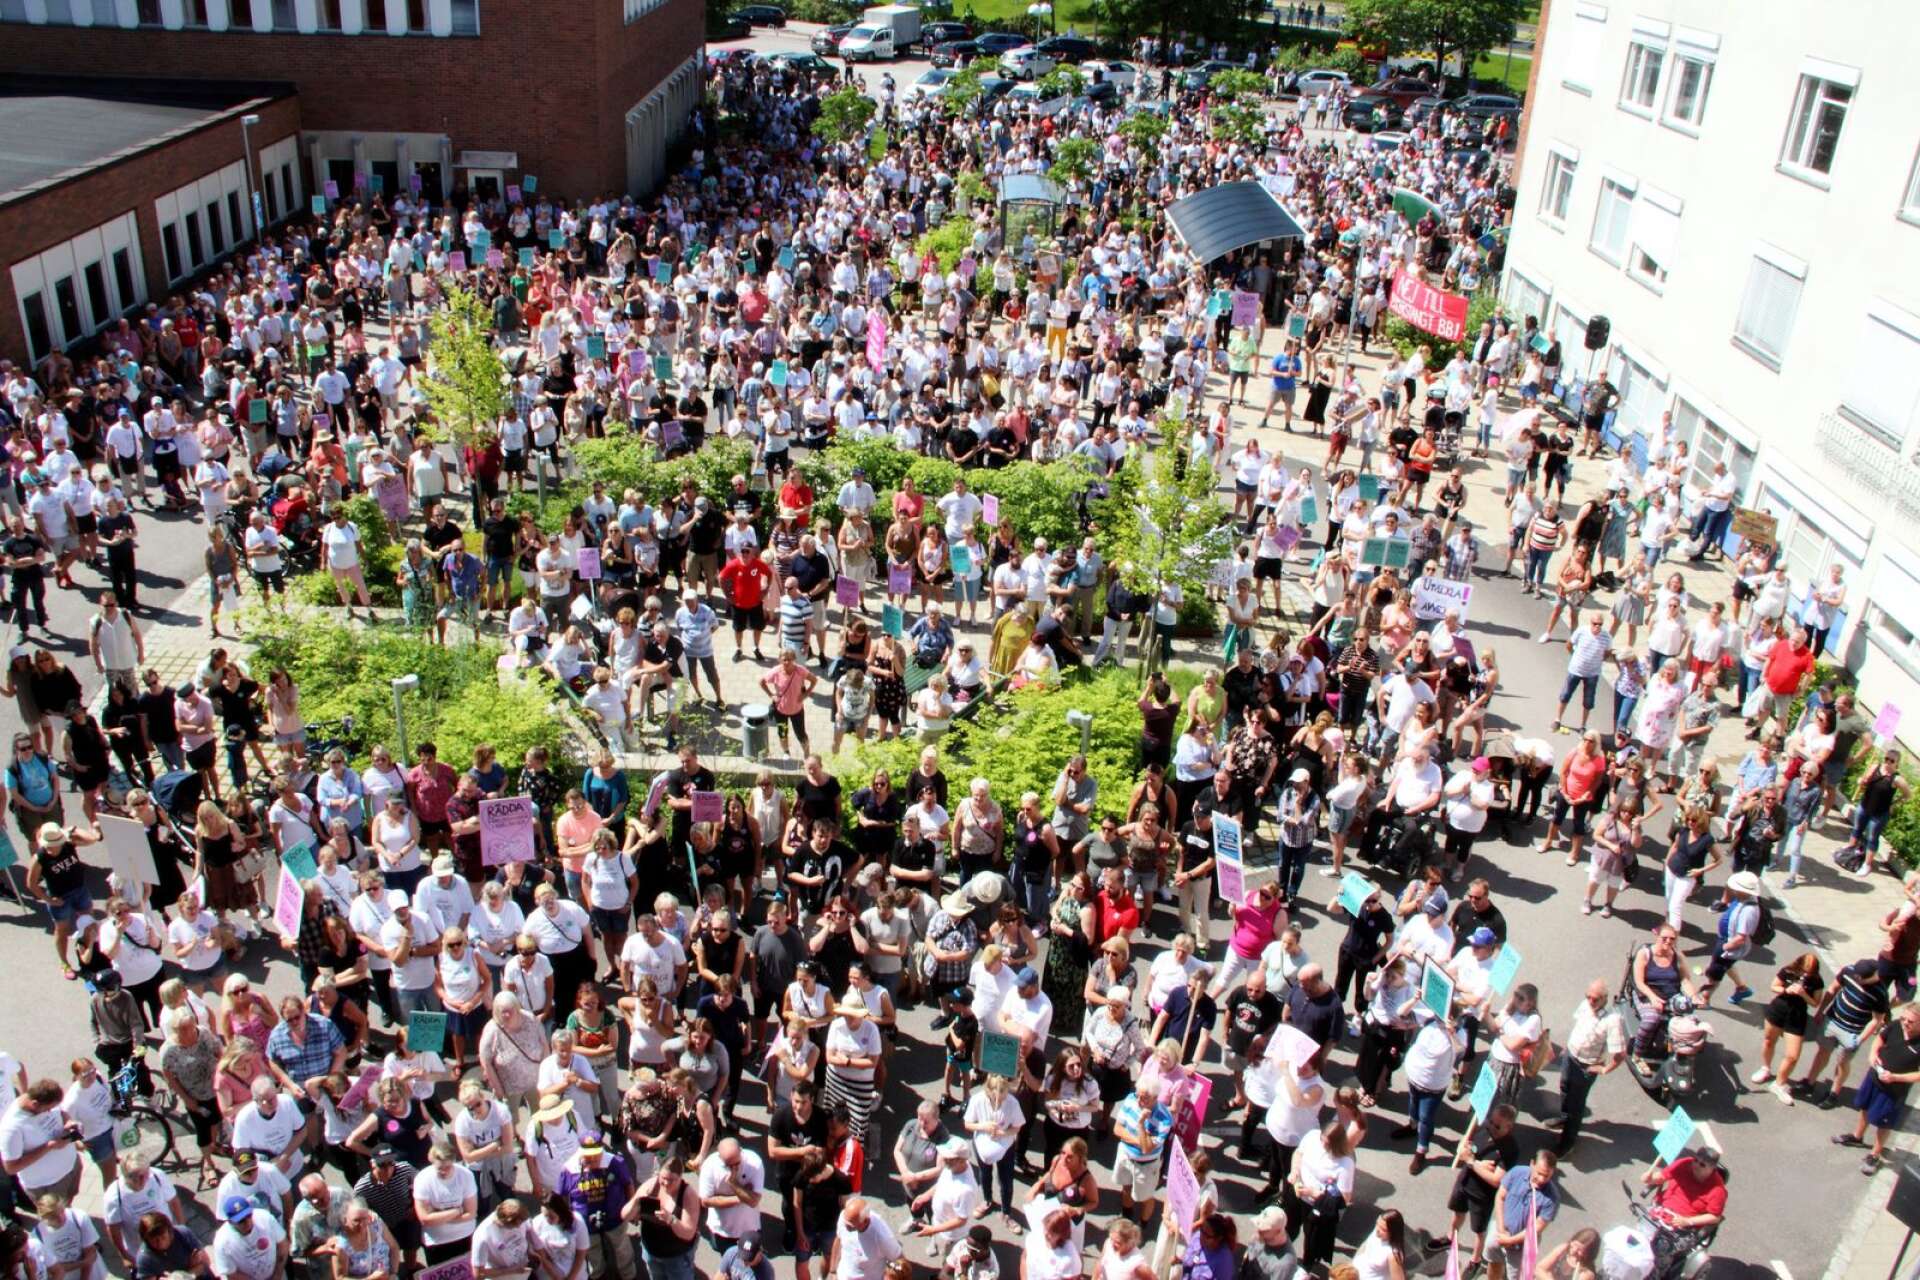 Demonstration mot nedläggningen av förlossningsavdelningen i Karlskoga